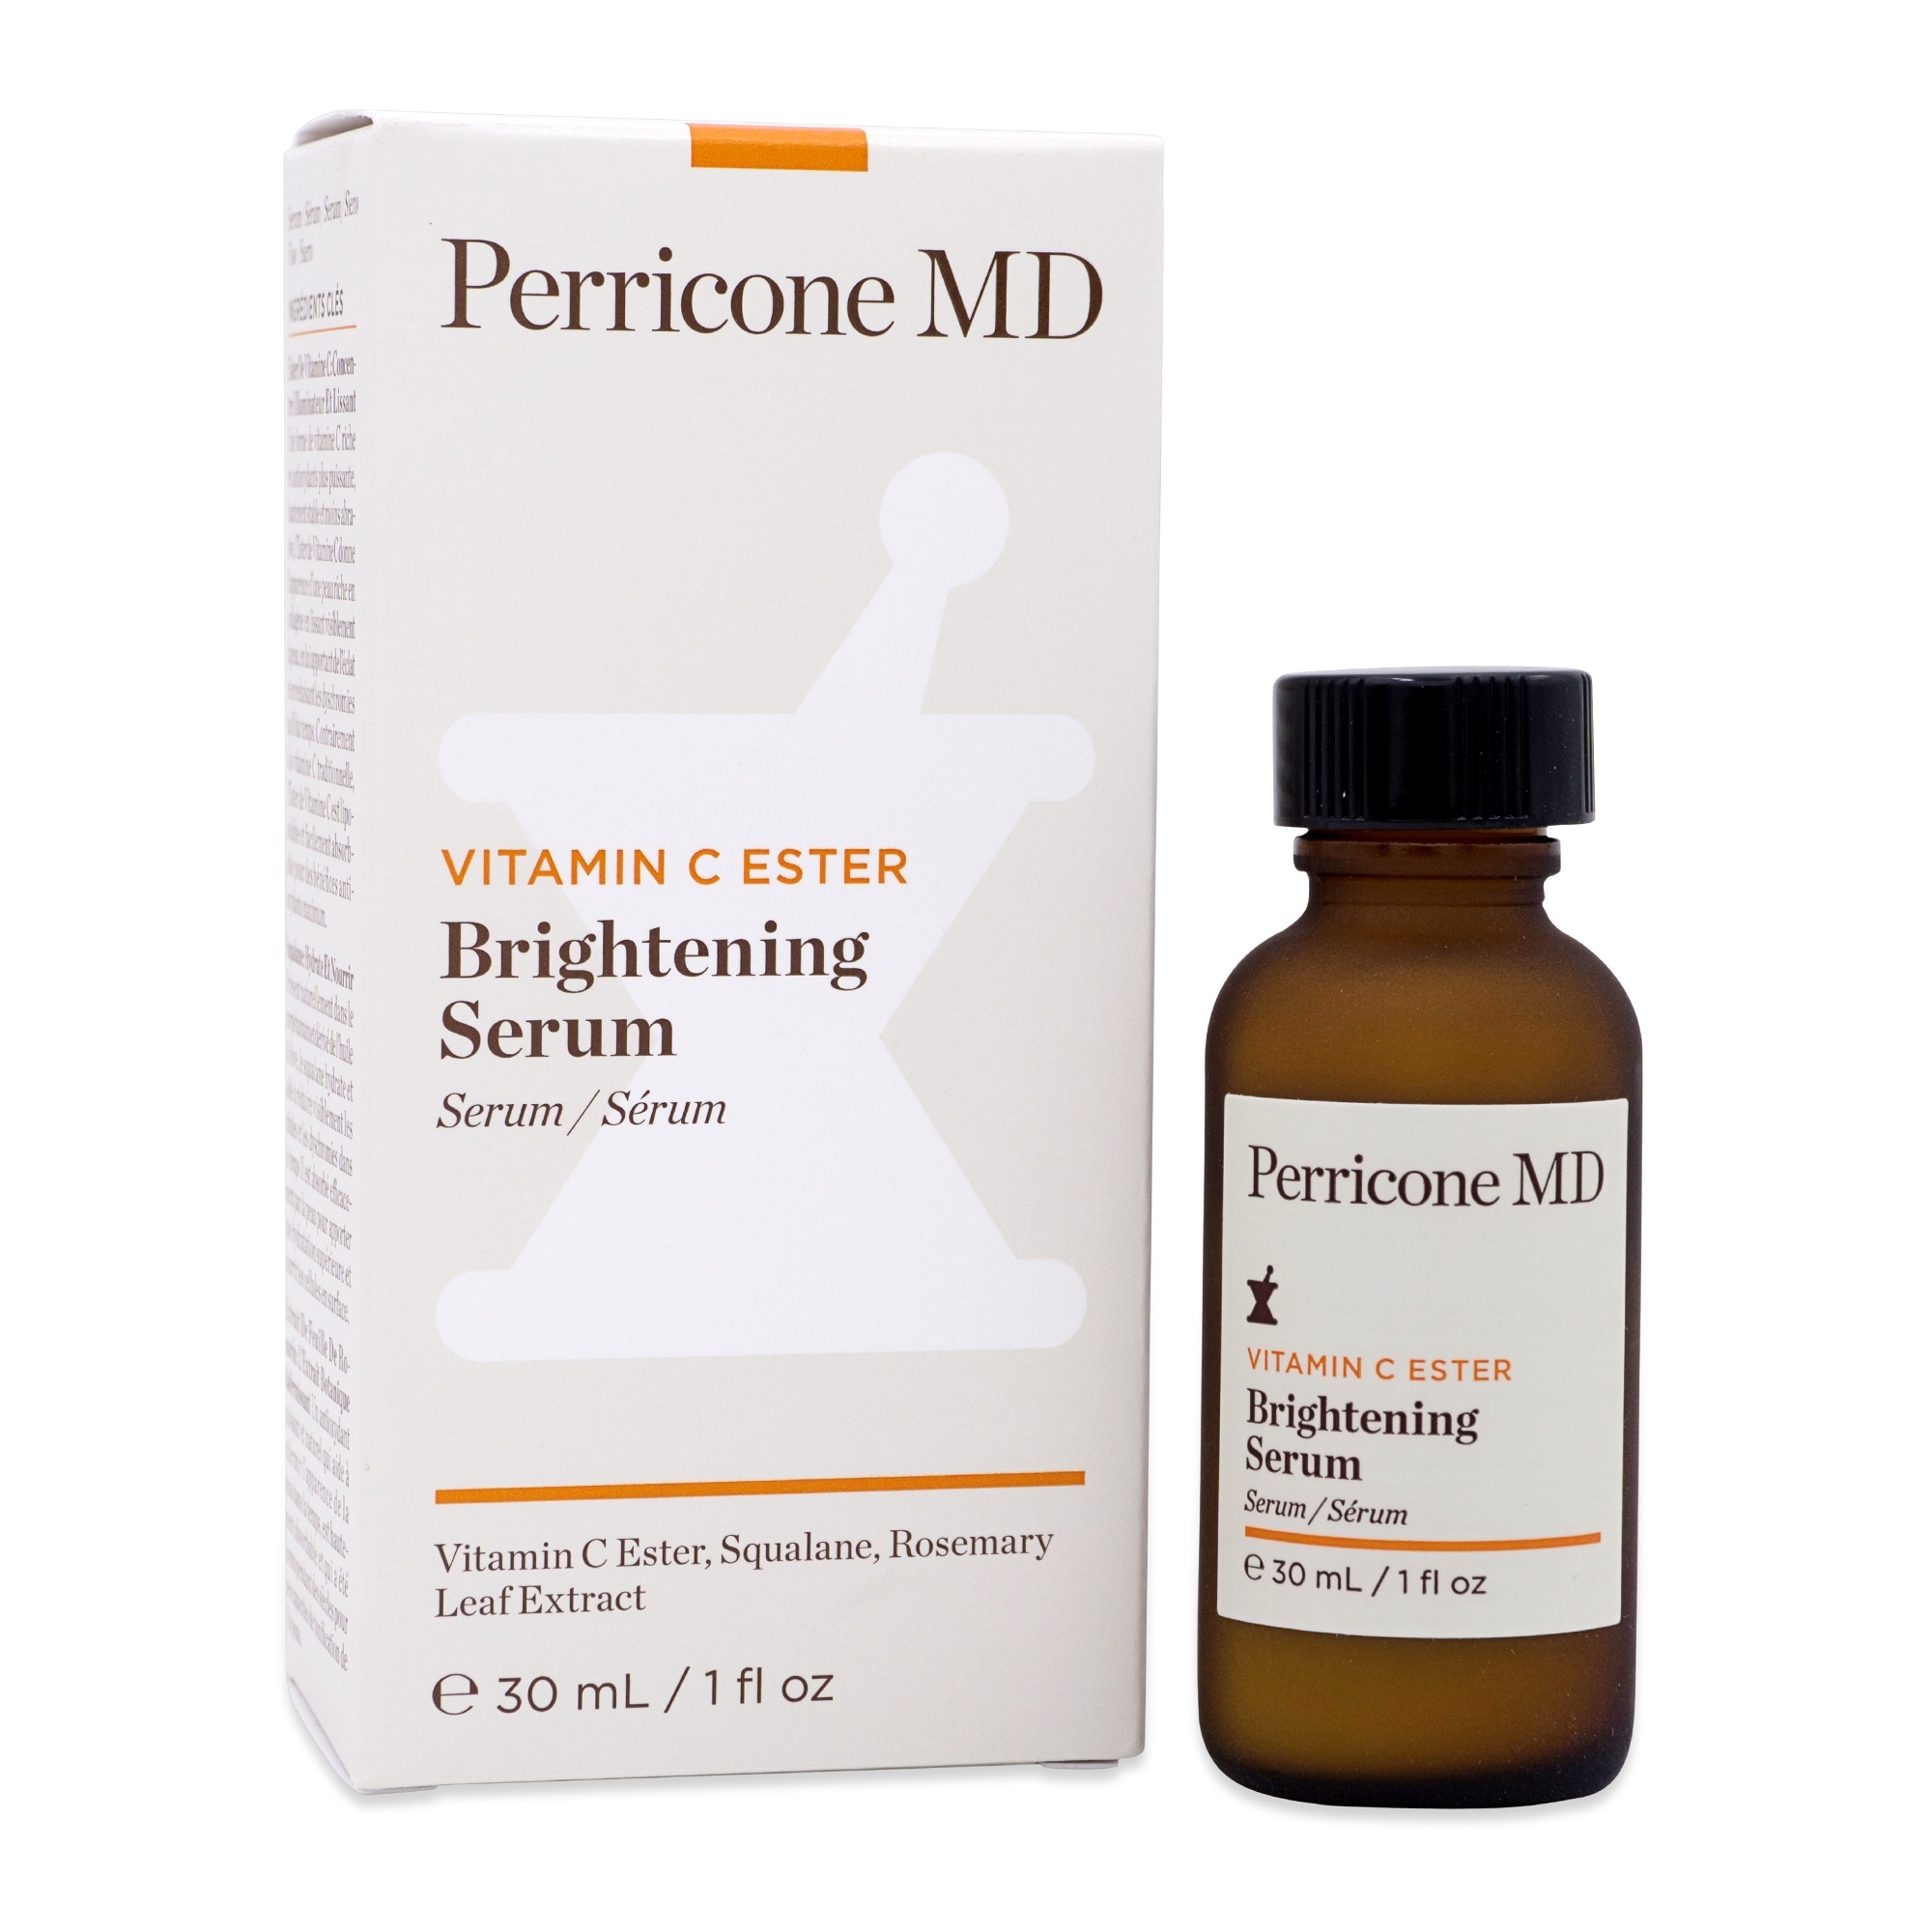 Perricone Md Vitamin C Ester Brightening Serum 1 Oz